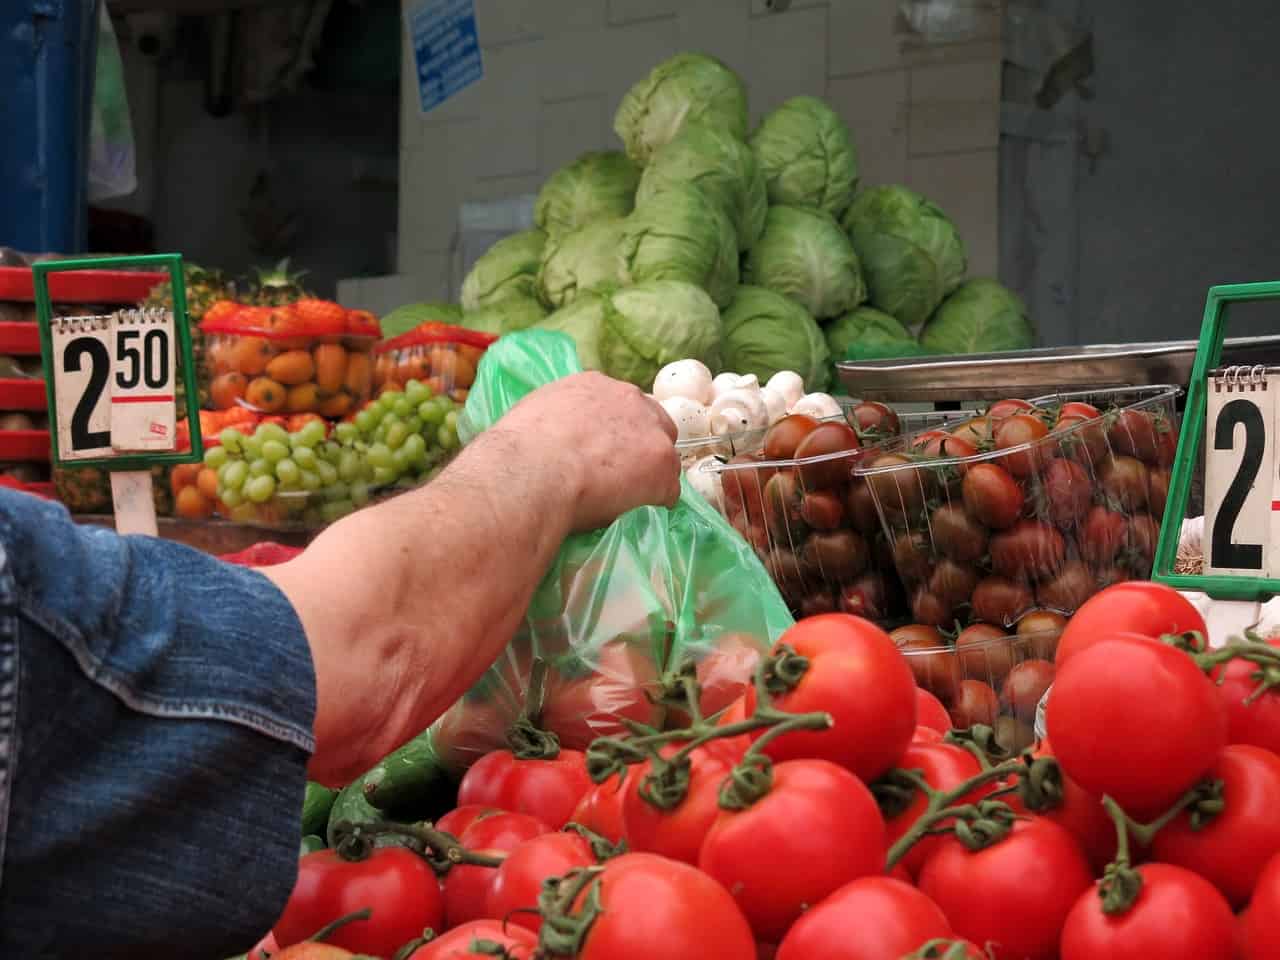 Europa stap dichterbij genetisch gemodificeerd voedsel